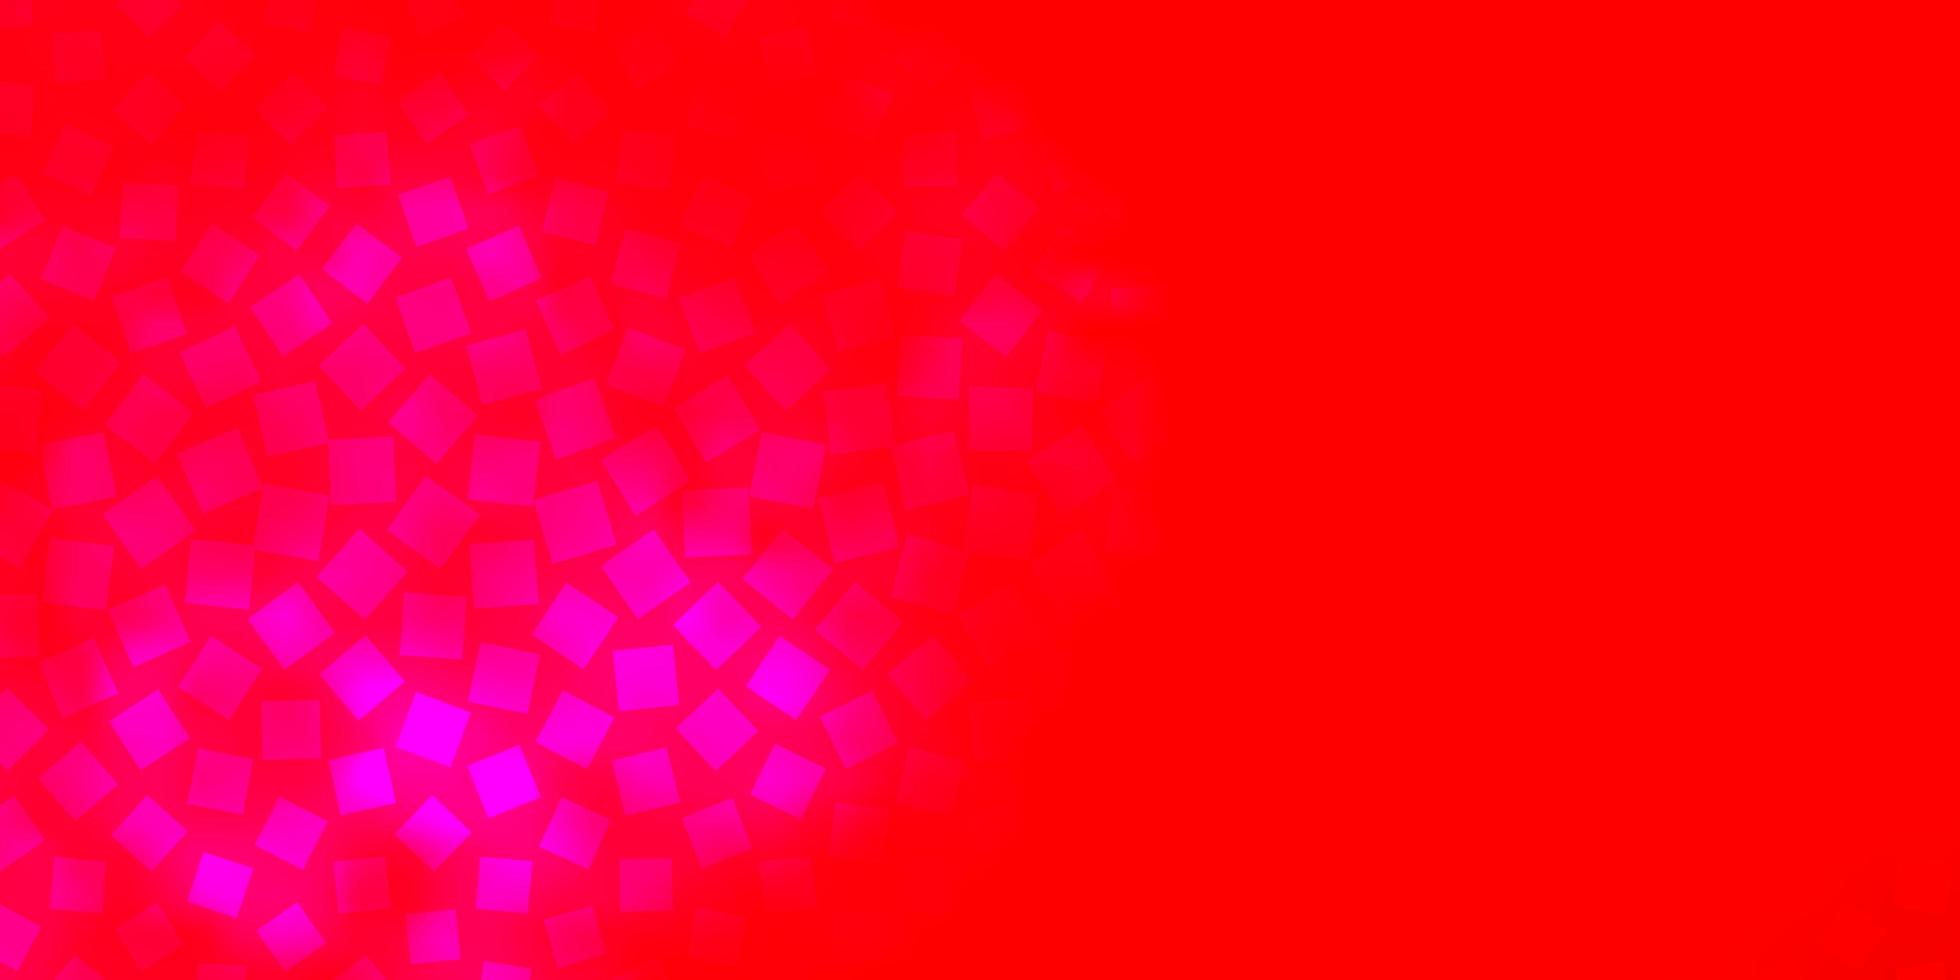 hellrosa rotes Vektormuster in quadratischen Rechtecken mit buntem Farbverlauf auf abstraktem Hintergrundmuster für Werbeanzeigen vektor